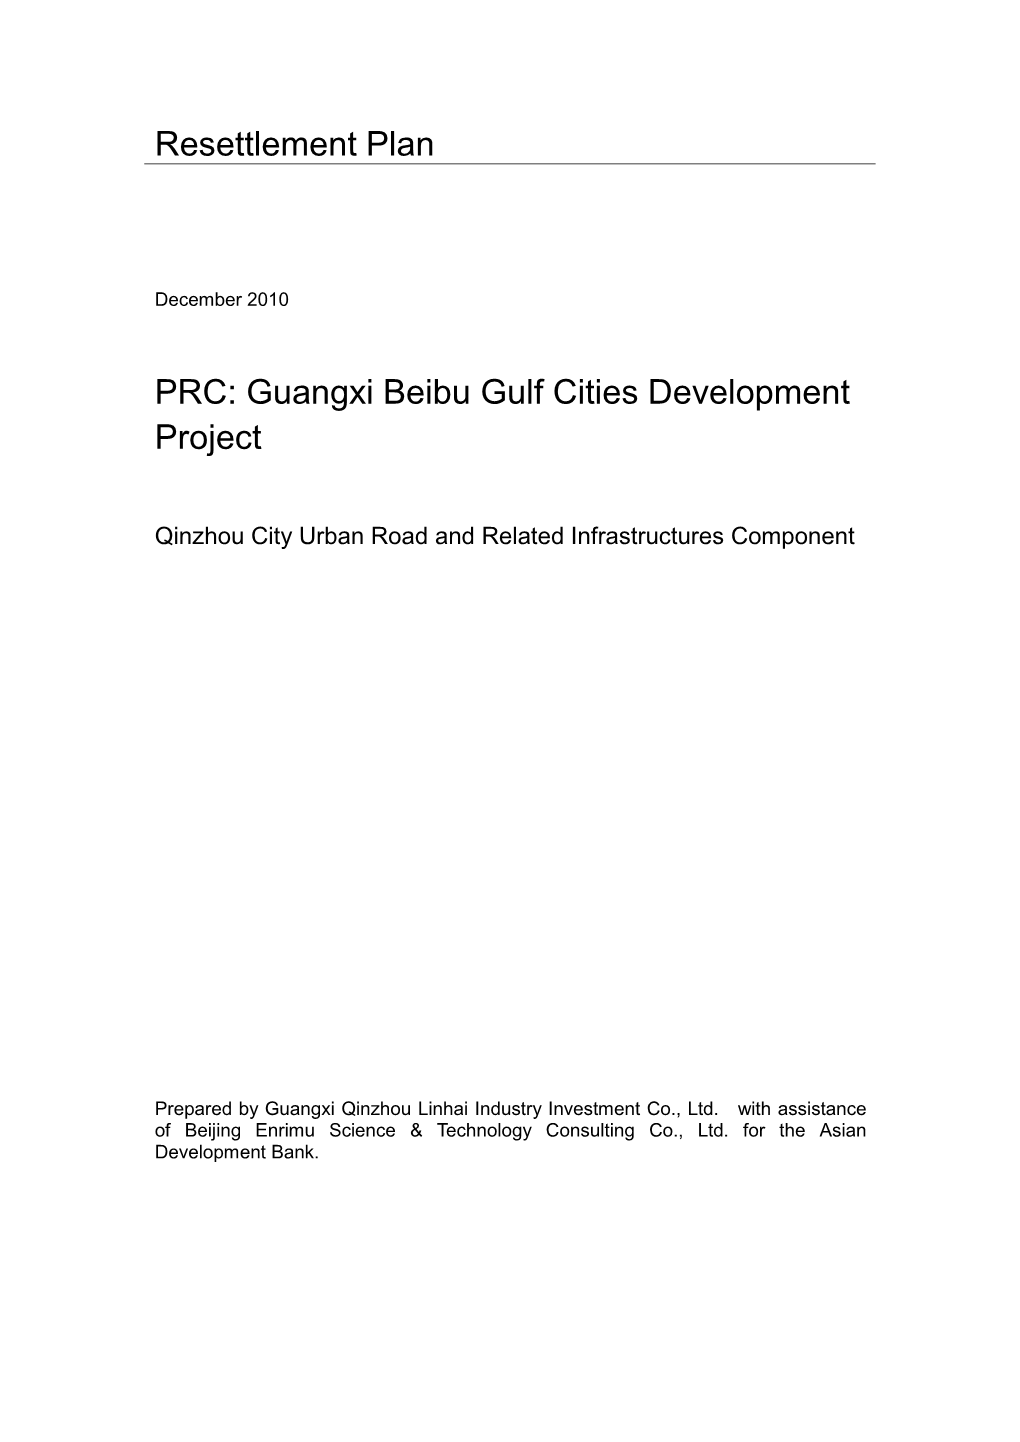 Guangxi Beibu Gulf Cities Development Project: Qinzhou City